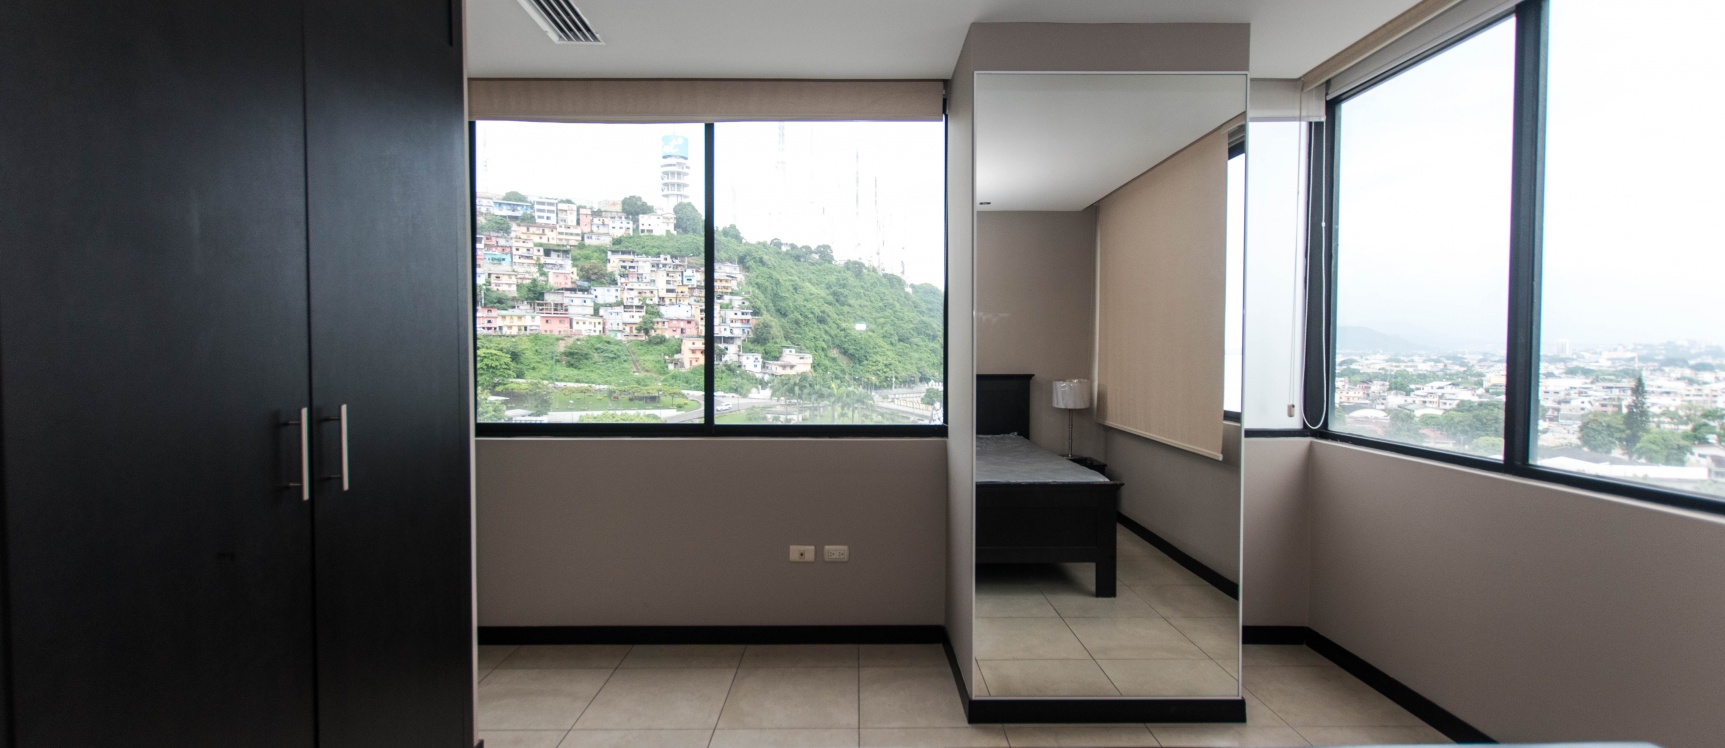 GeoBienes - Departamento en alquiler ubicado en Torres Bellini II, Puerto Santa Ana - Plusvalia Guayaquil Casas de venta y alquiler Inmobiliaria Ecuador